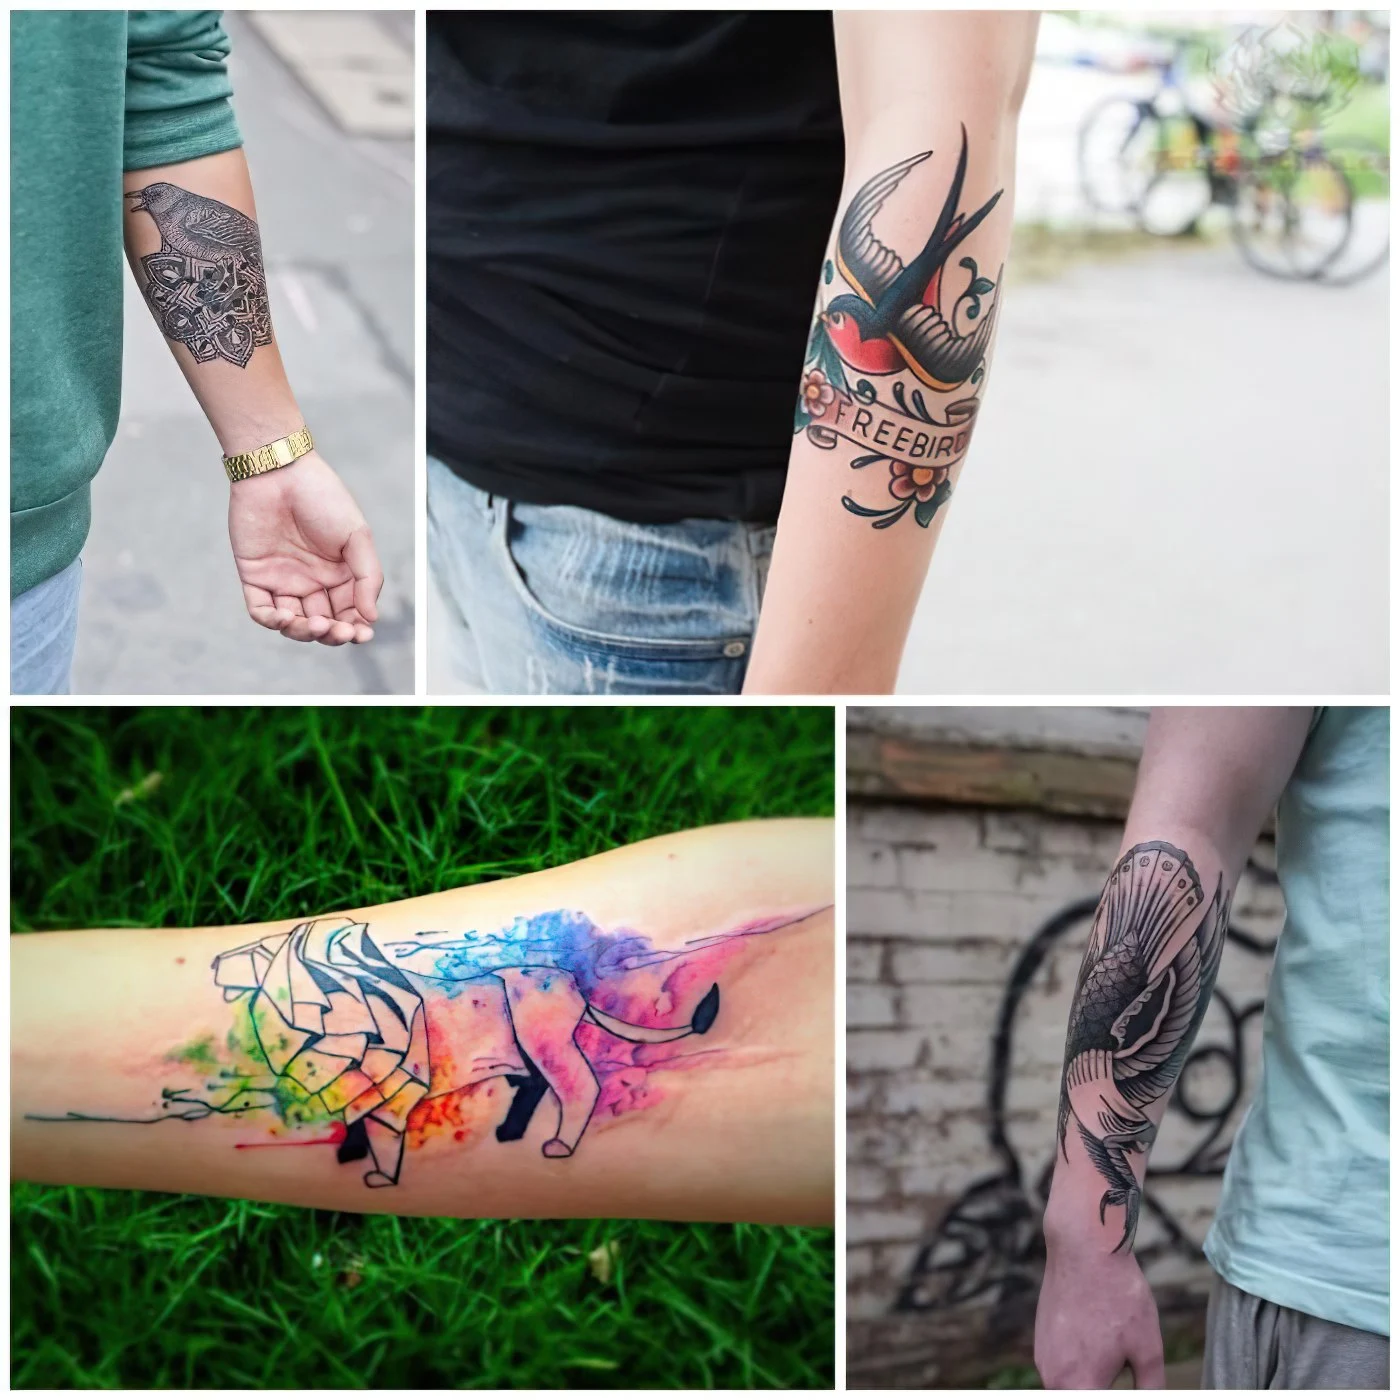 wasserfarben tattoo mit löwen-motiv, vogel tattoos